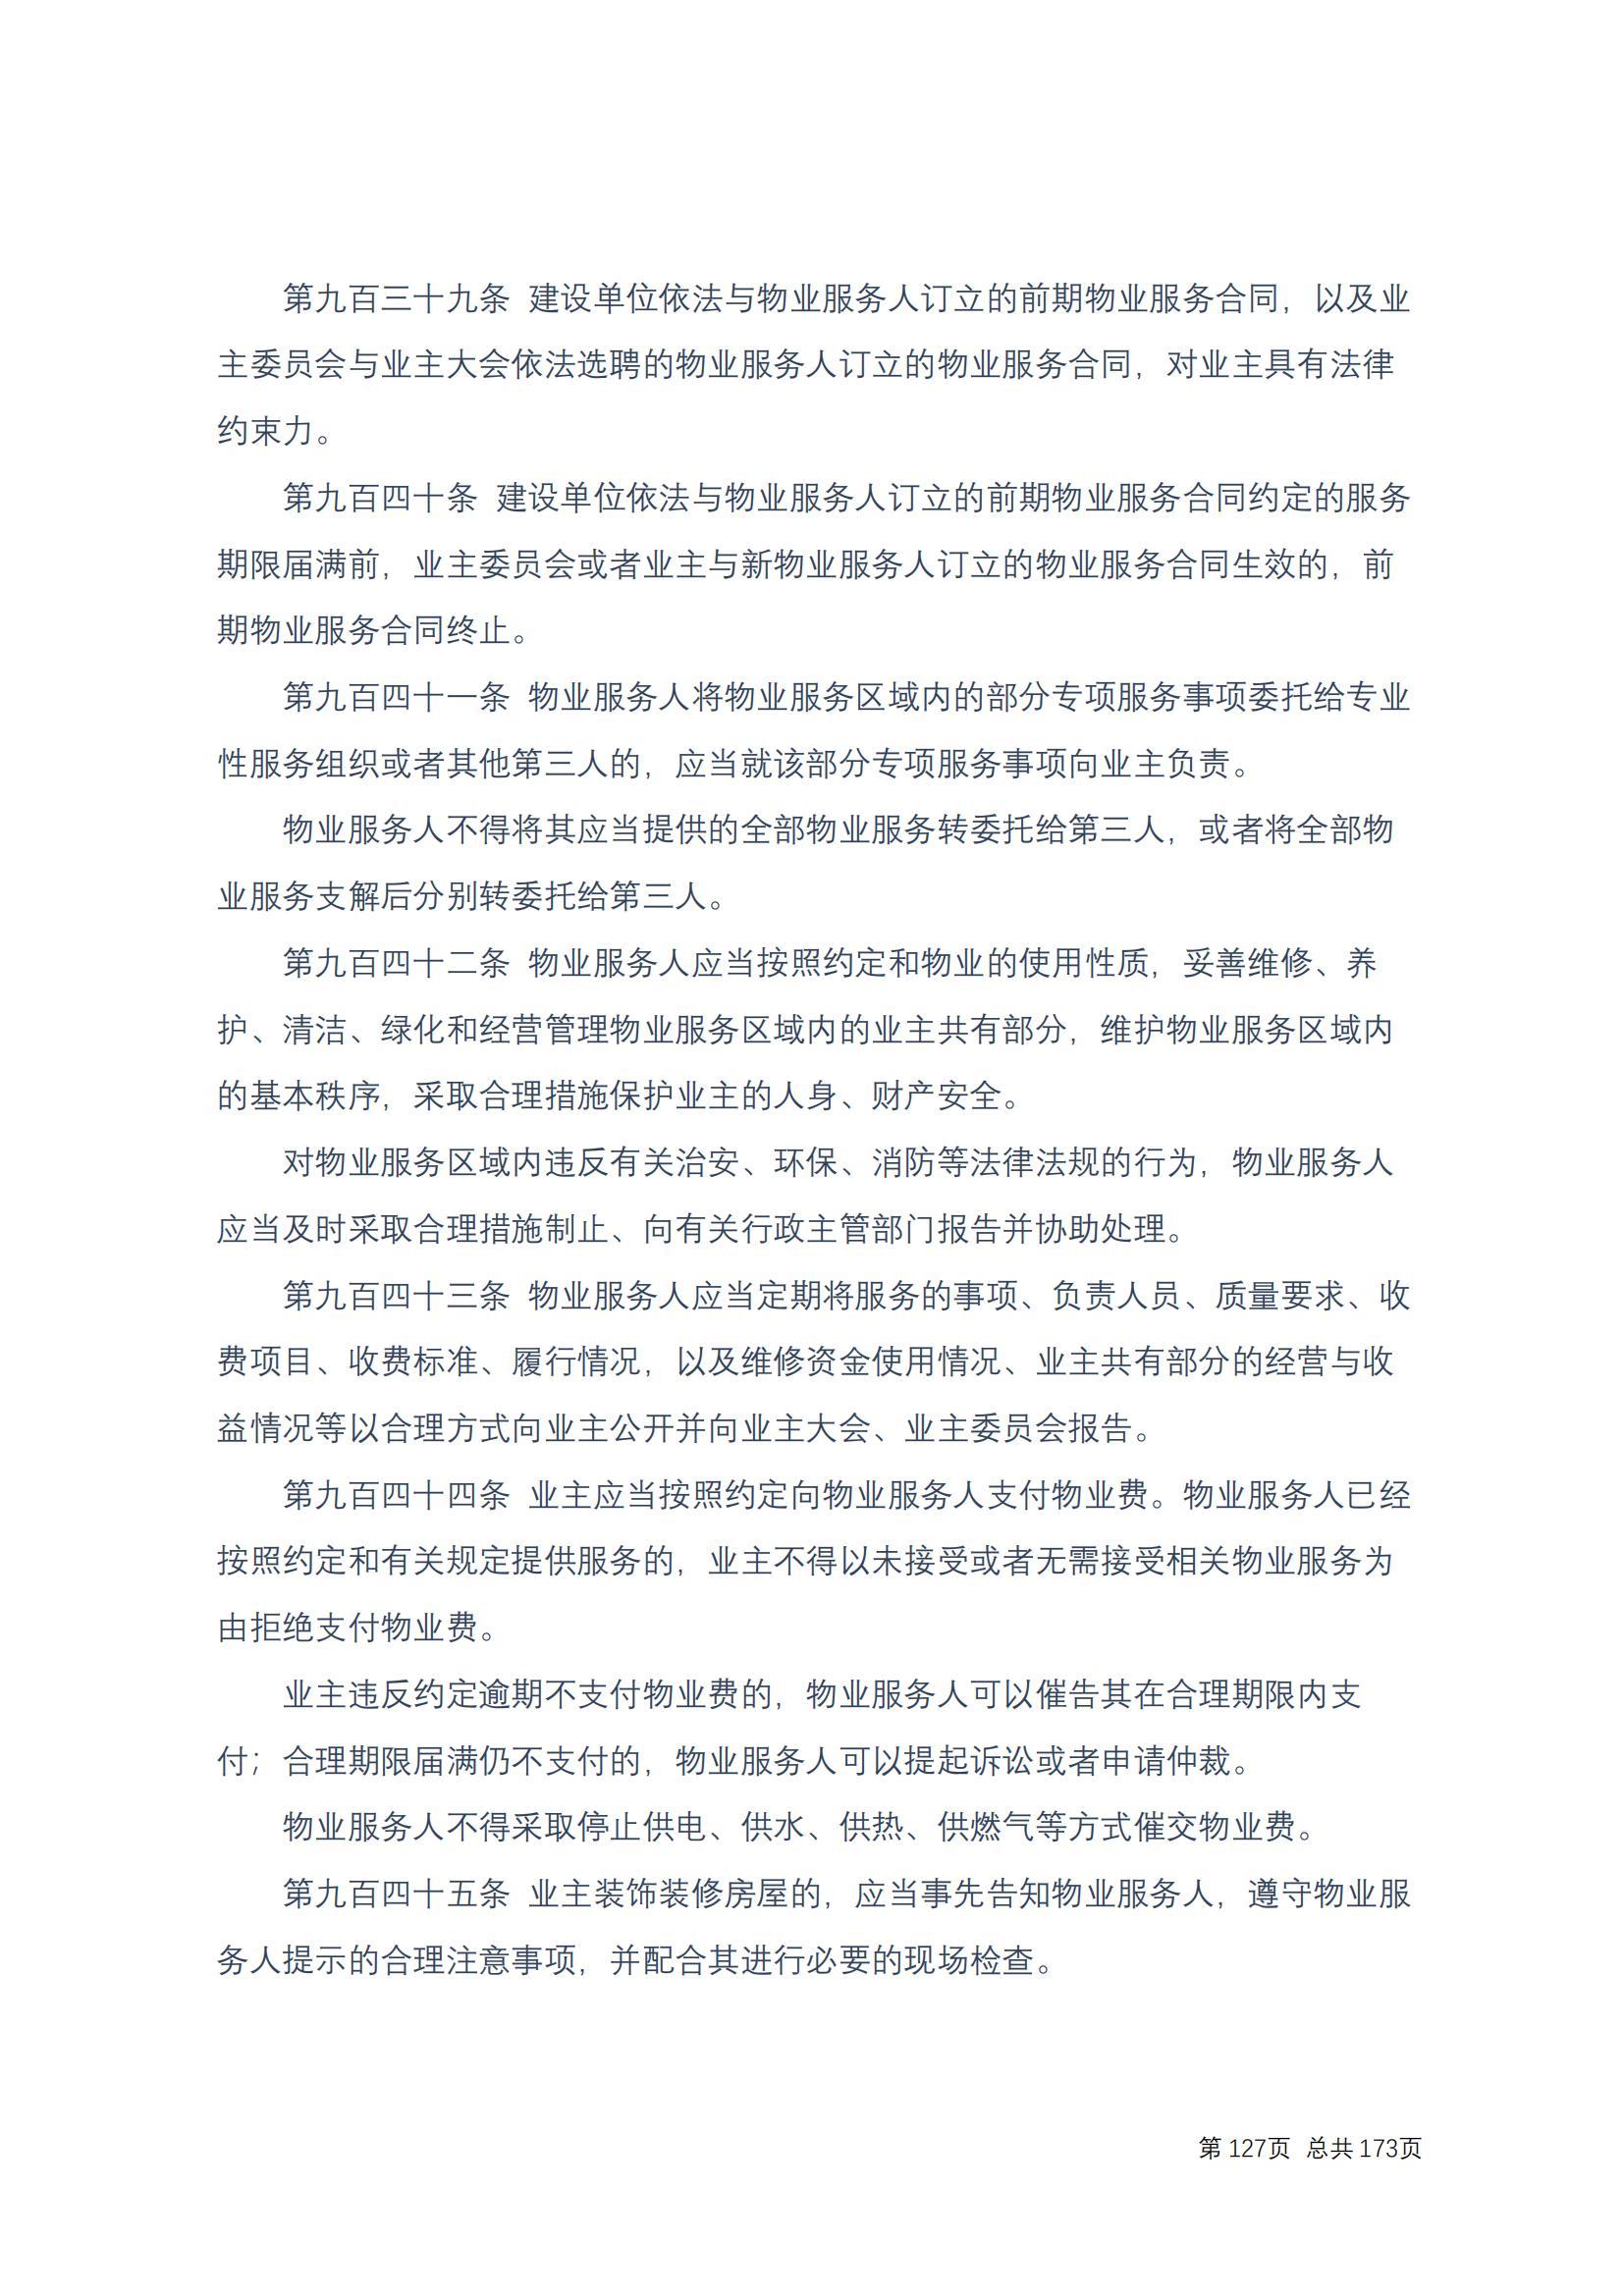 中华人民共和国民法典 修改过_126